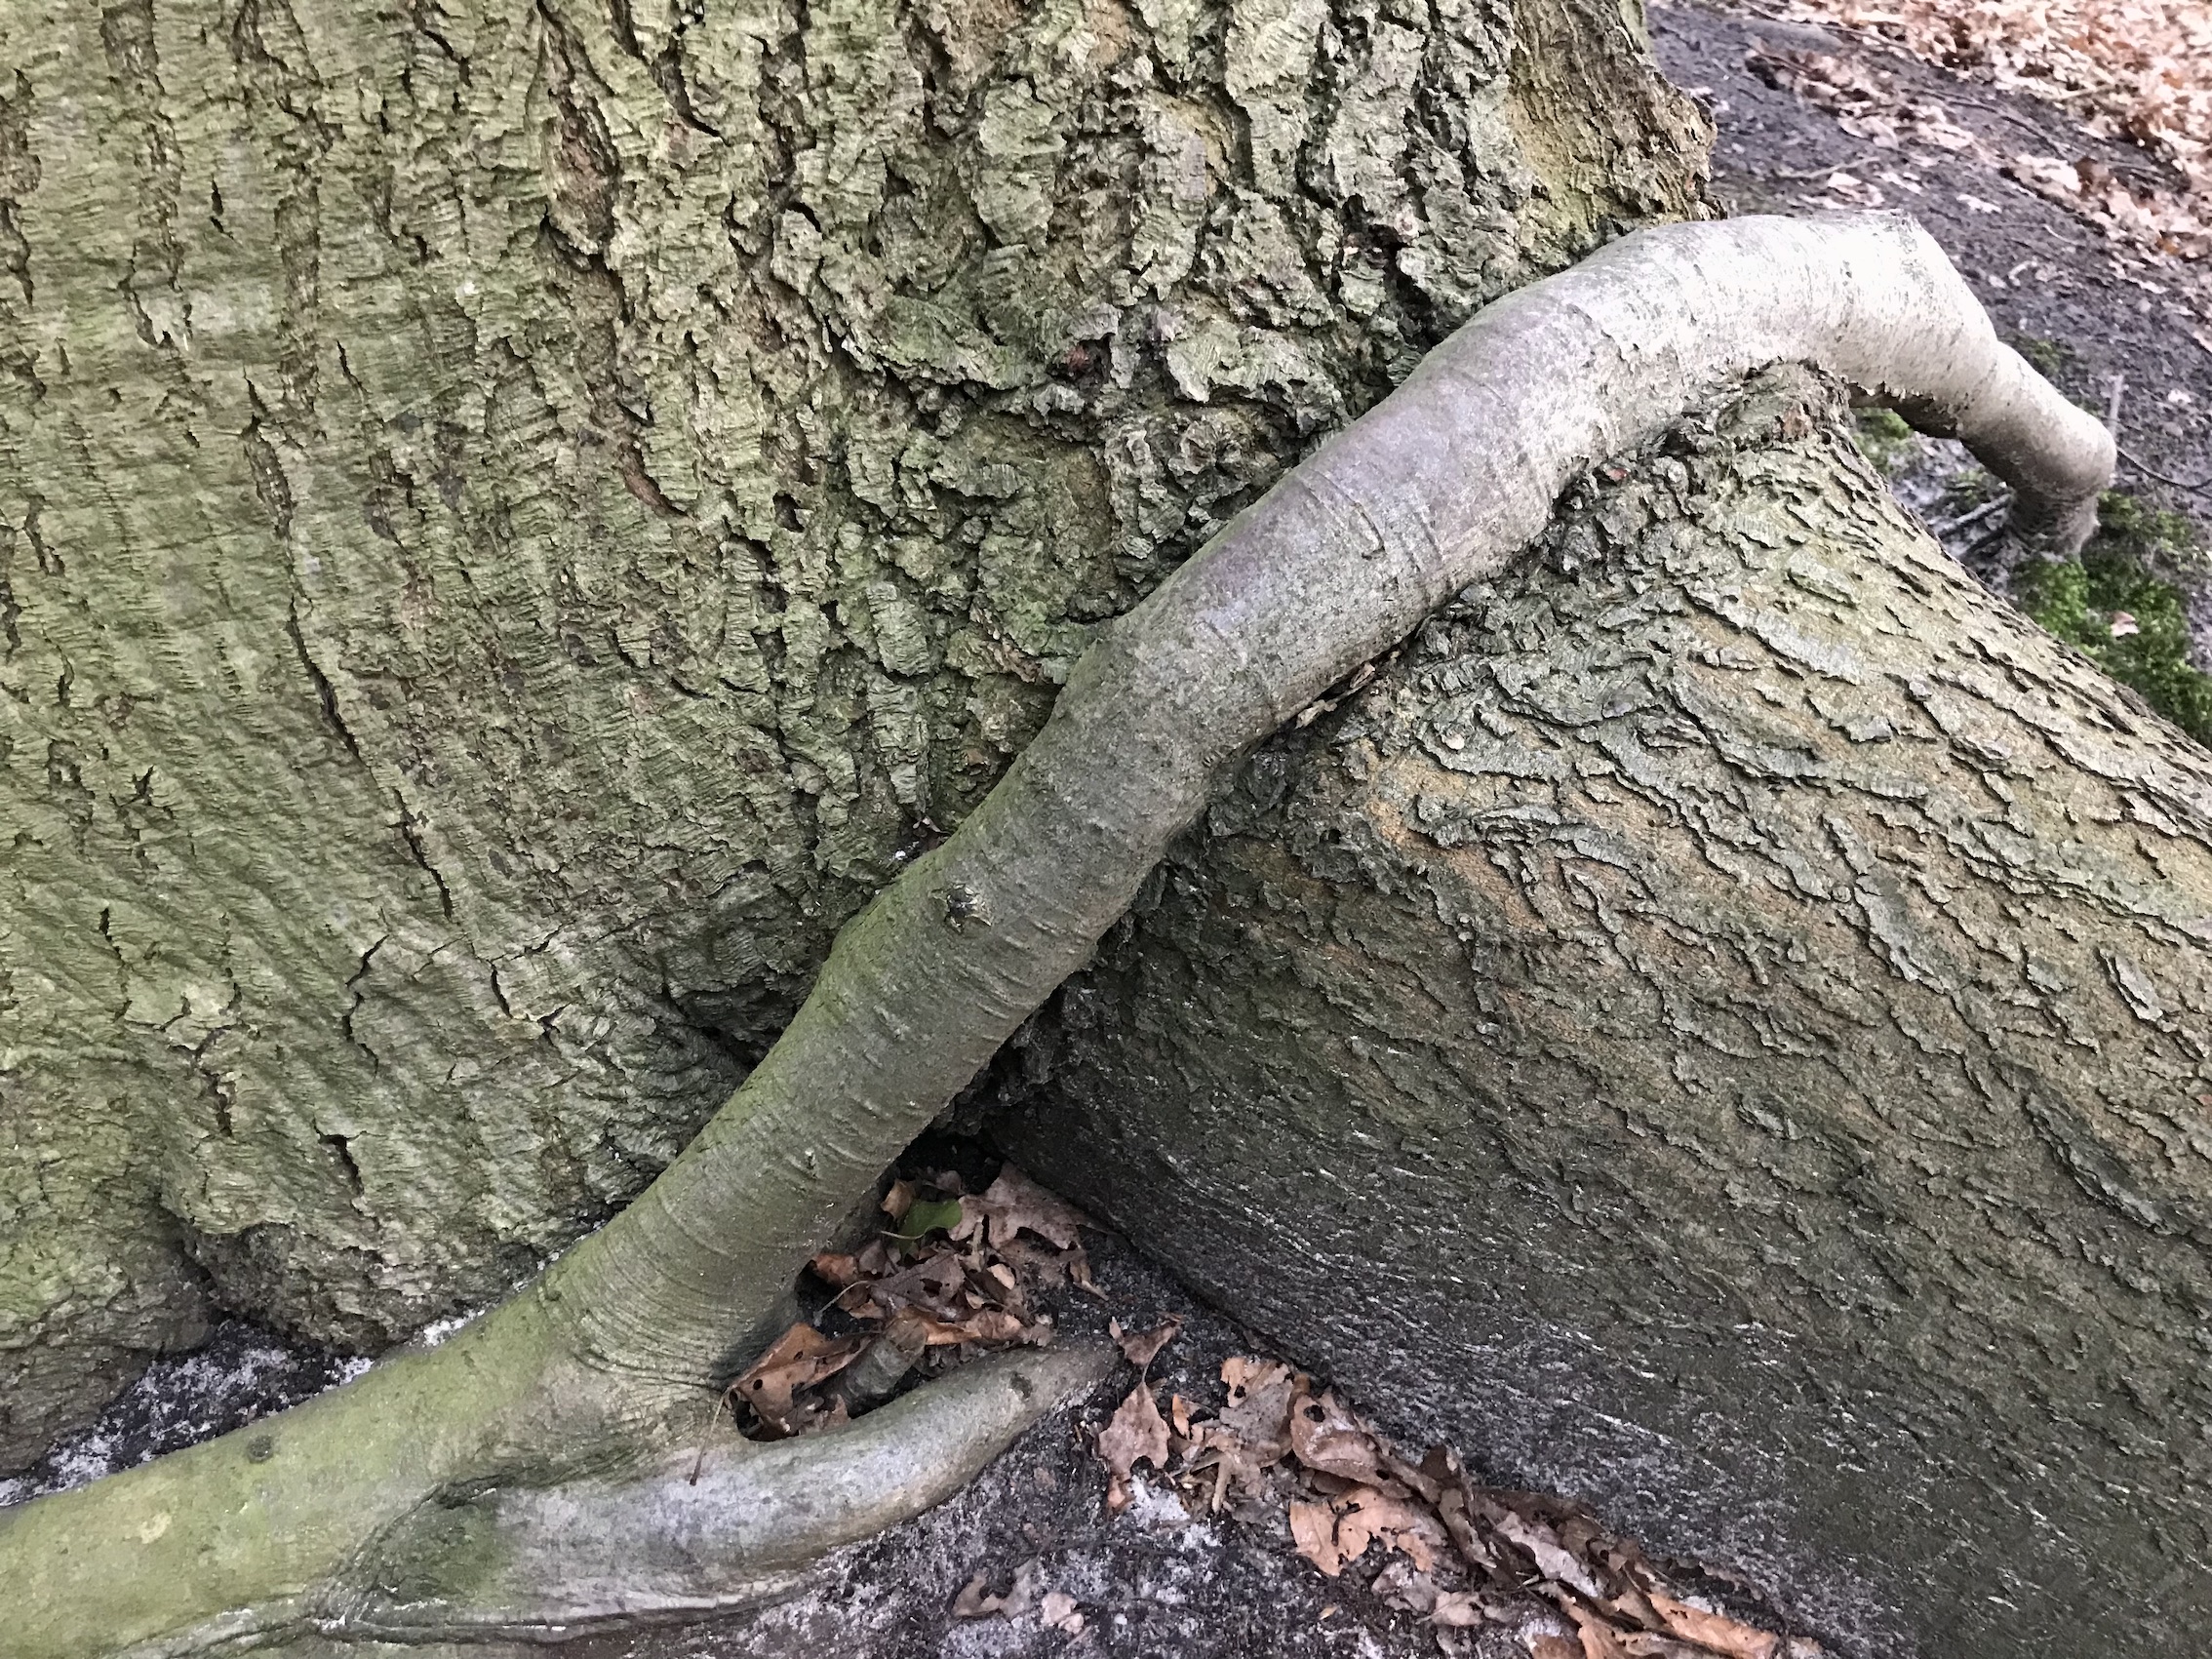 Barneführer Holz: Dicke Baumwurzel, umschlungen von jüngerer Wurzel eines anderen Baumes